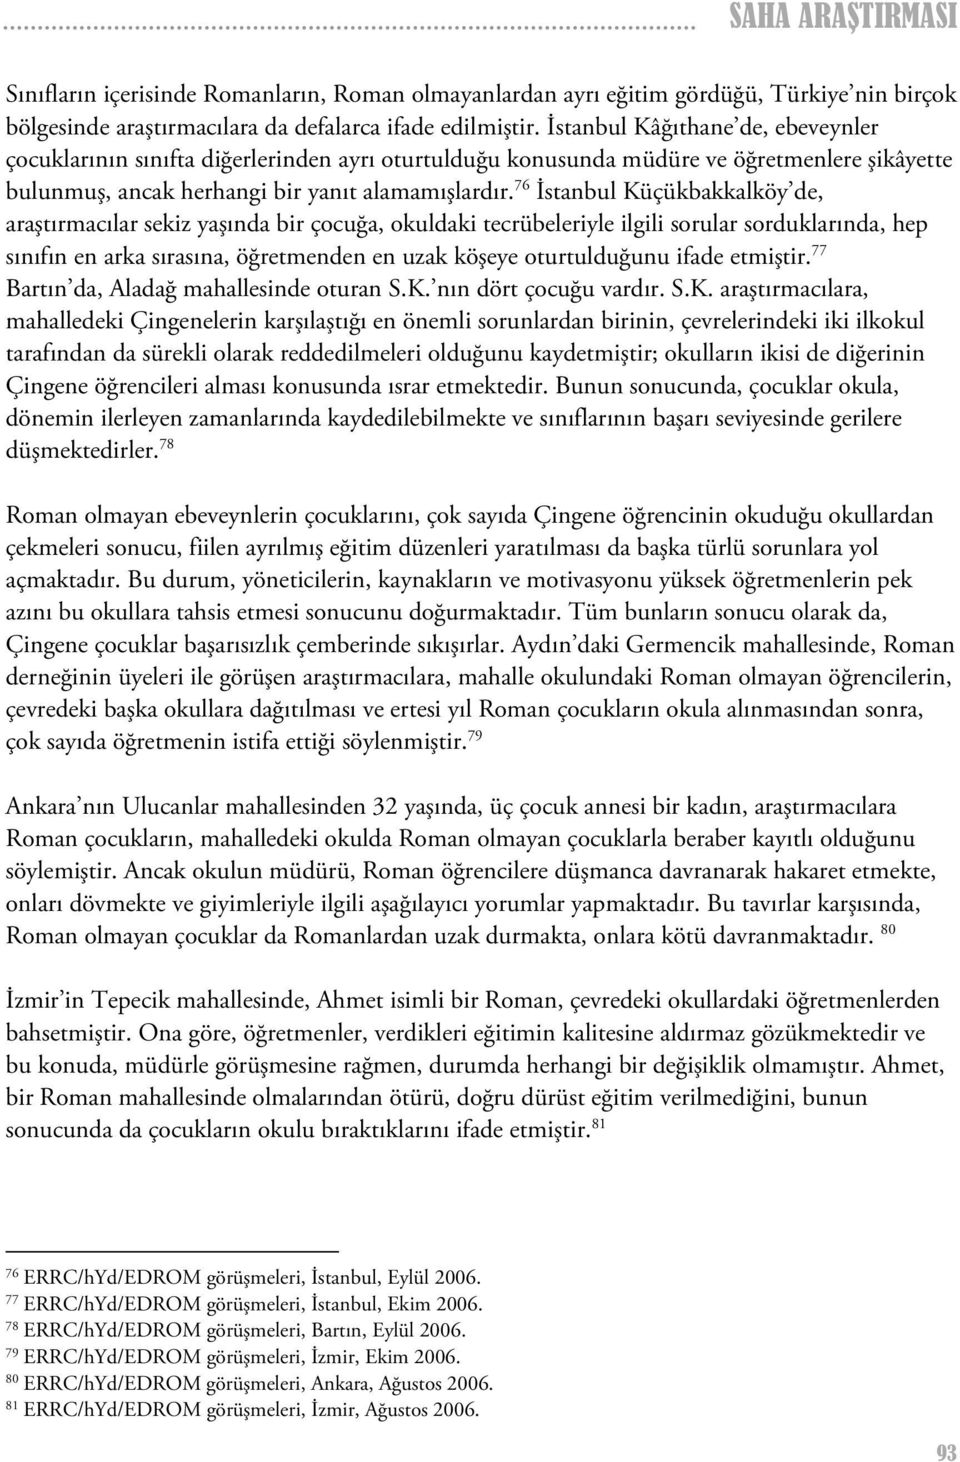 76 İstanbul Küçükbakkalköy de, araştırmacılar sekiz yaşında bir çocuğa, okuldaki tecrübeleriyle ilgili sorular sorduklarında, hep sınıfın en arka sırasına, öğretmenden en uzak köşeye oturtulduğunu